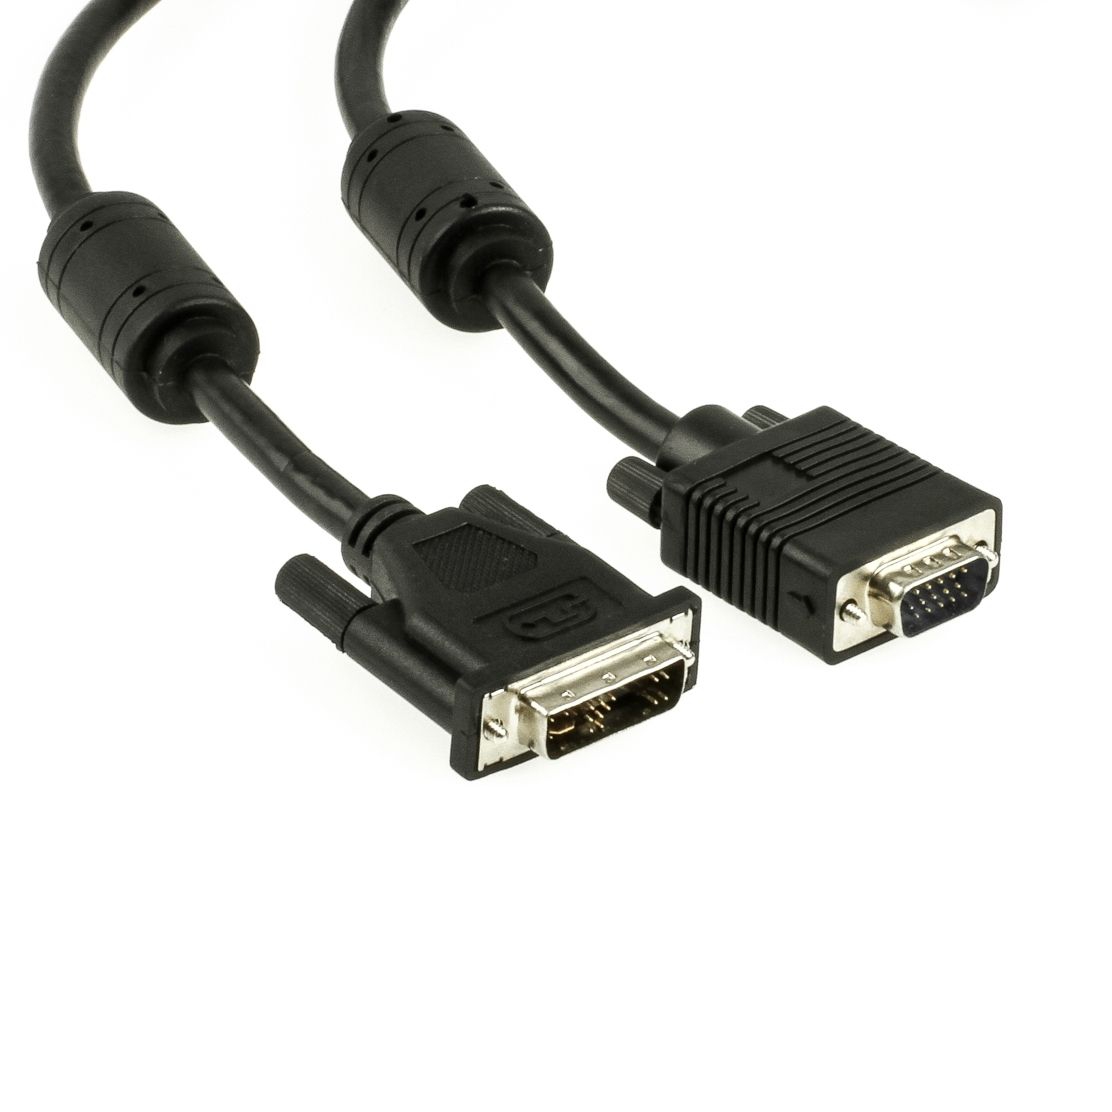 PC monitor cable, DVI male to VGA male, 3m